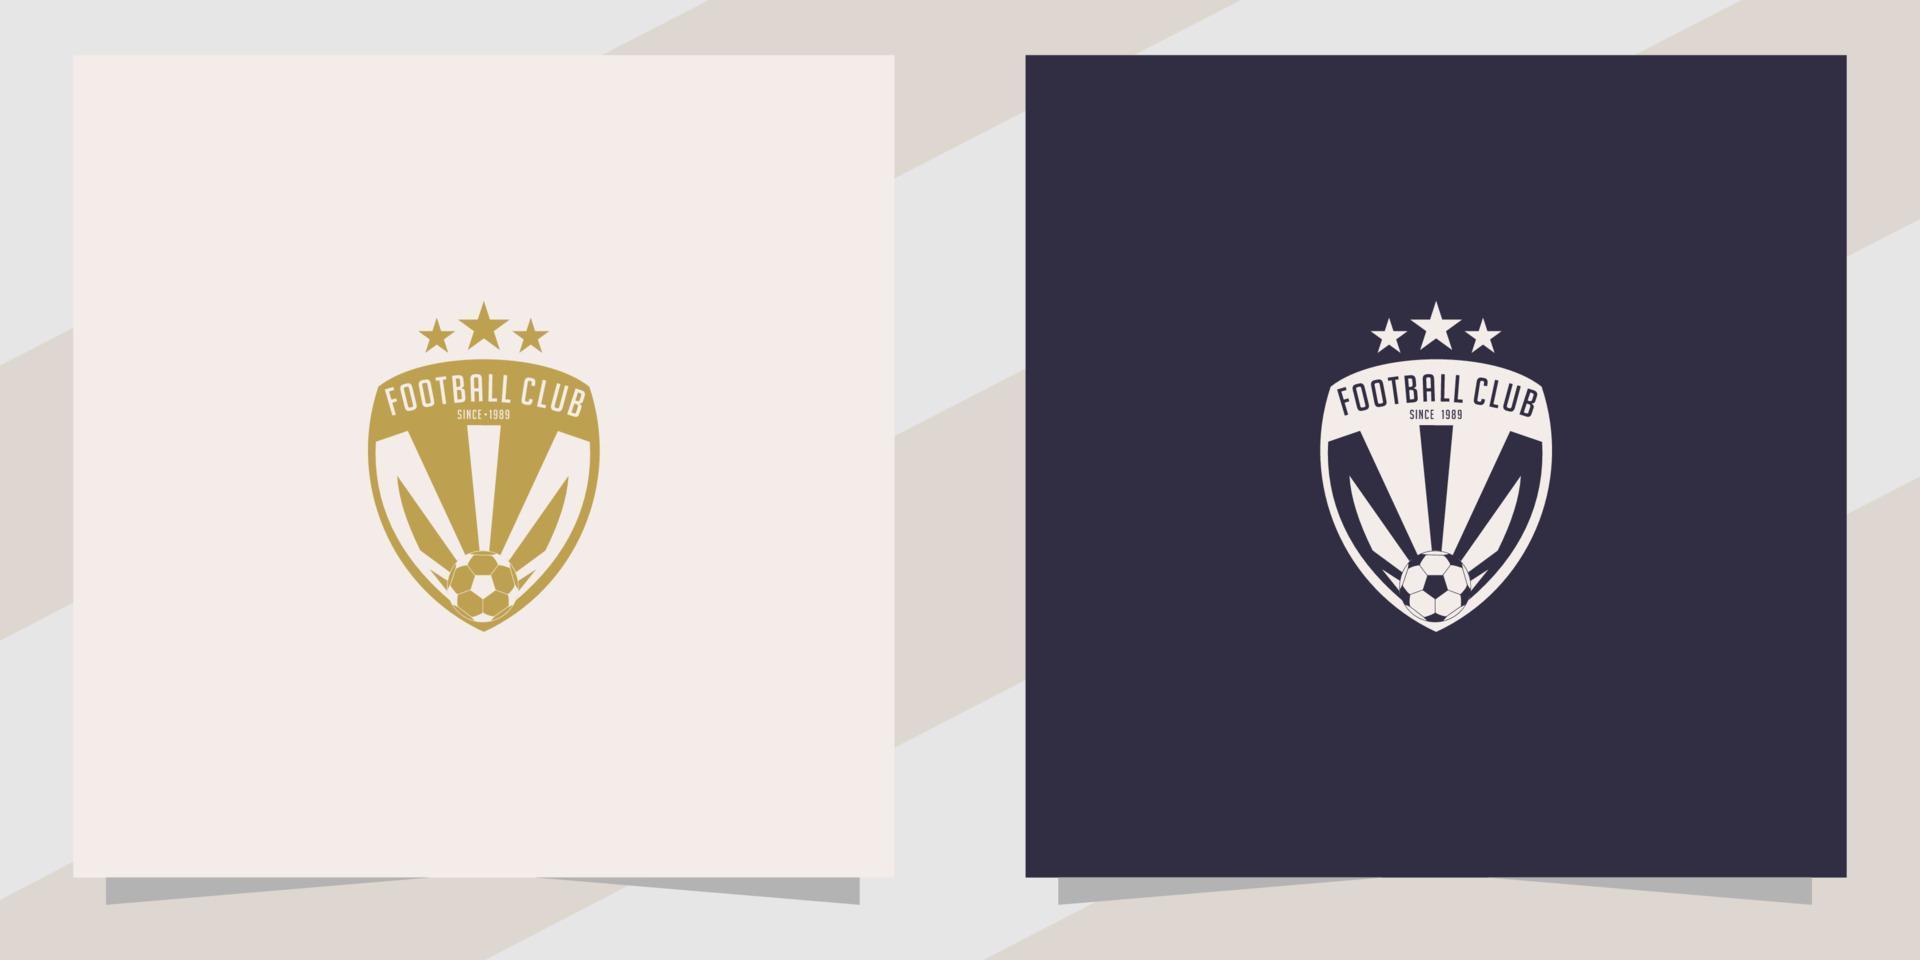 Soccer football logo design template vector